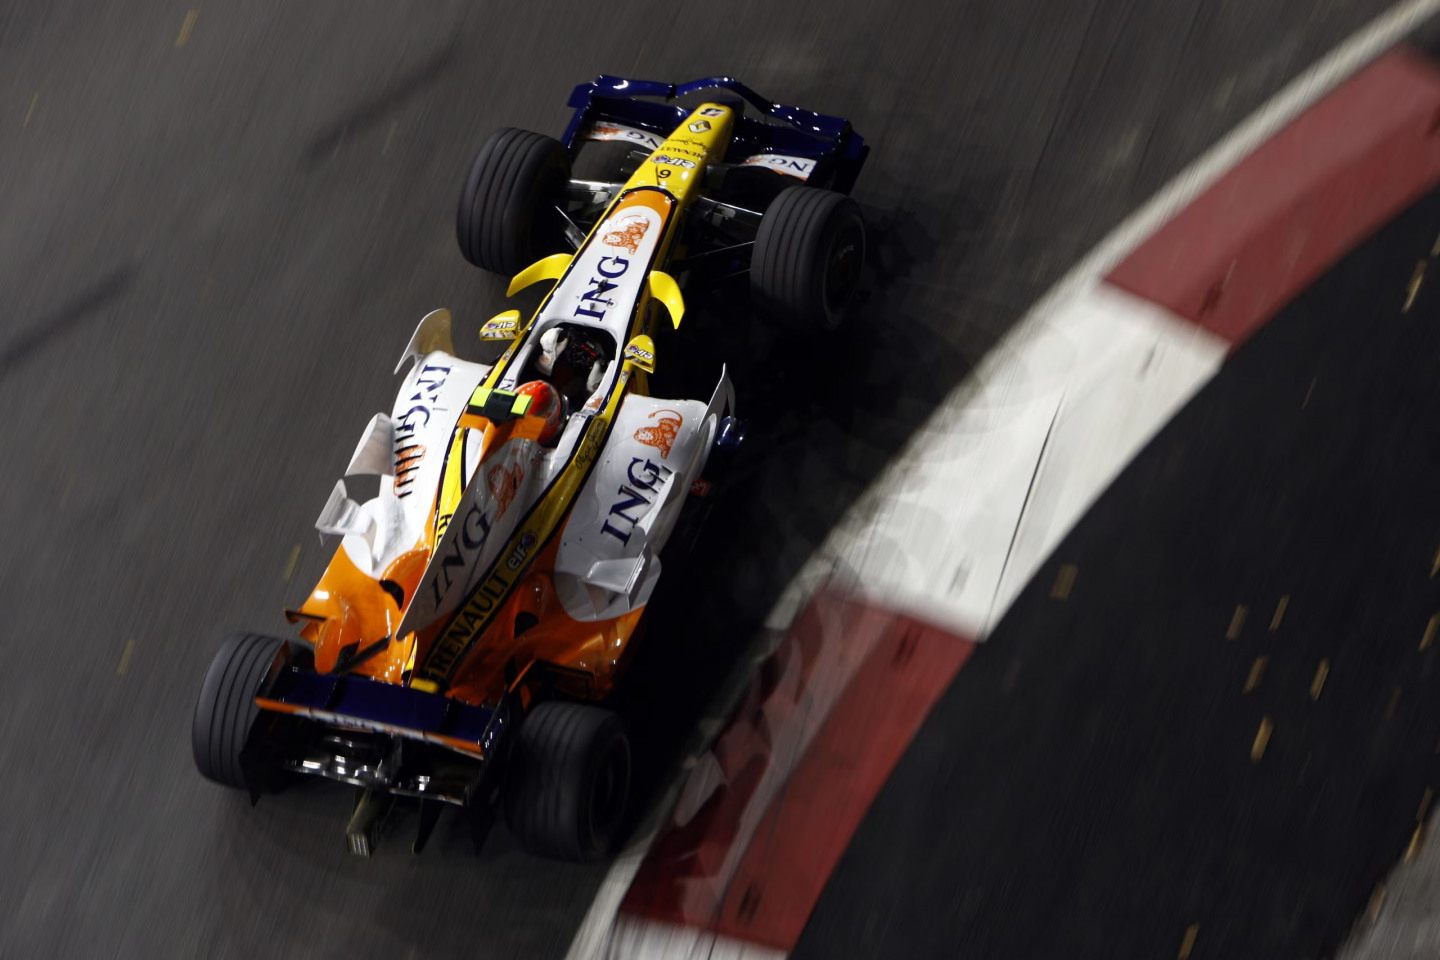 За десять проведенных гонок в сезоне-2009 Нельсиньо Пике не набрал ни одного очка © F1